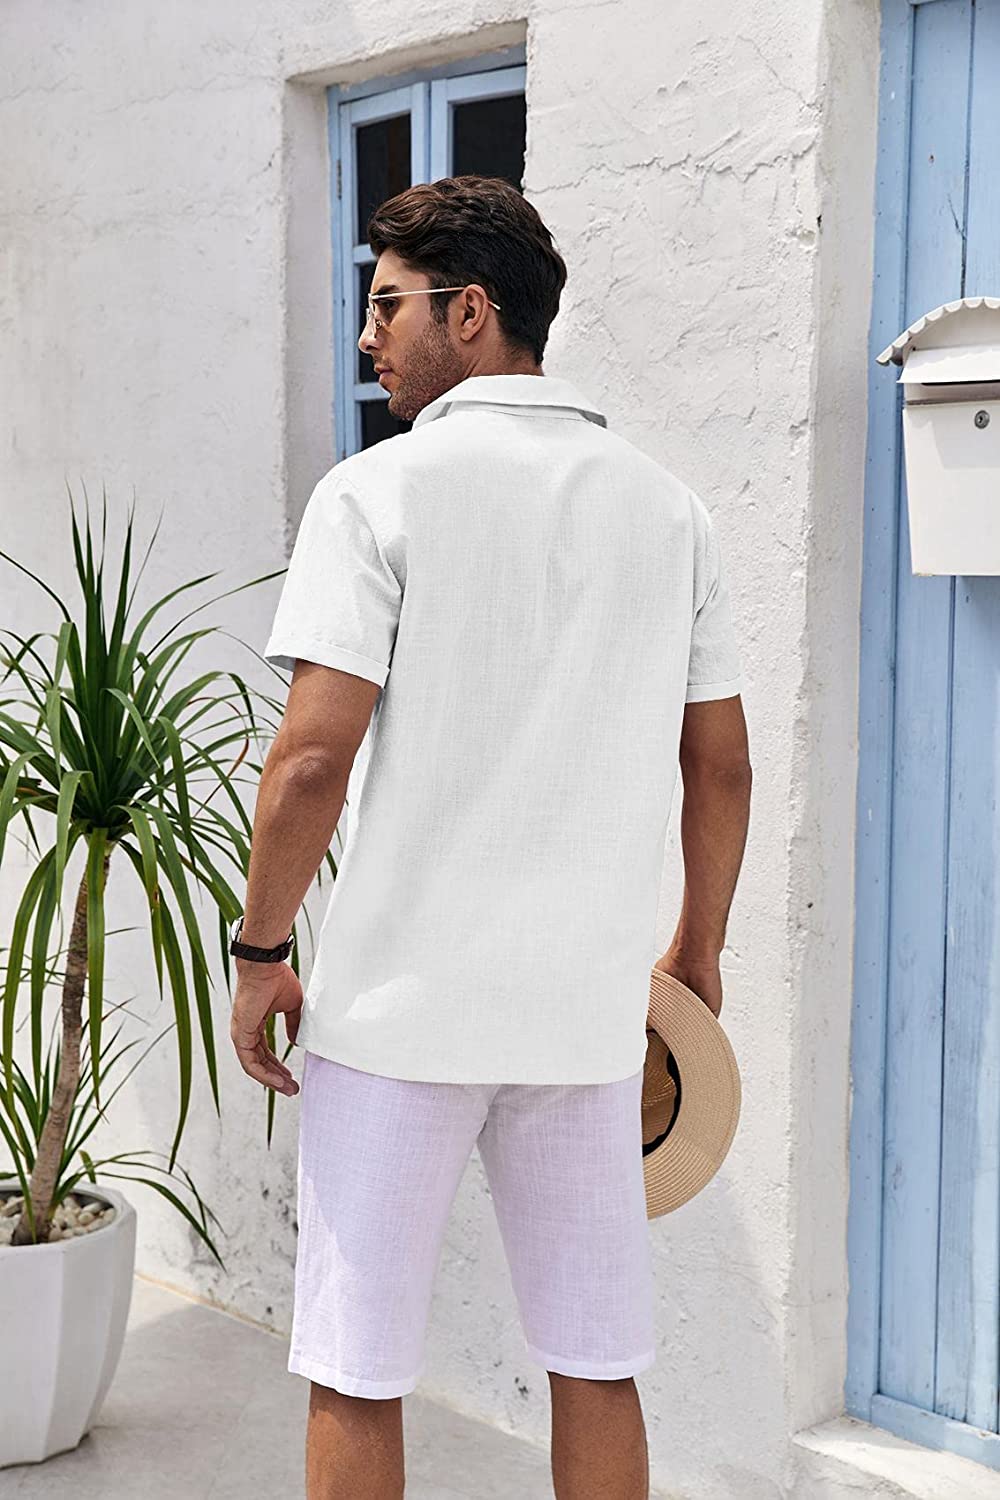 Mens Short Sleeve Button Up Shirts Linen Cotton Beach Tops Spread Collar Plain Summer T Shirt with Pocket